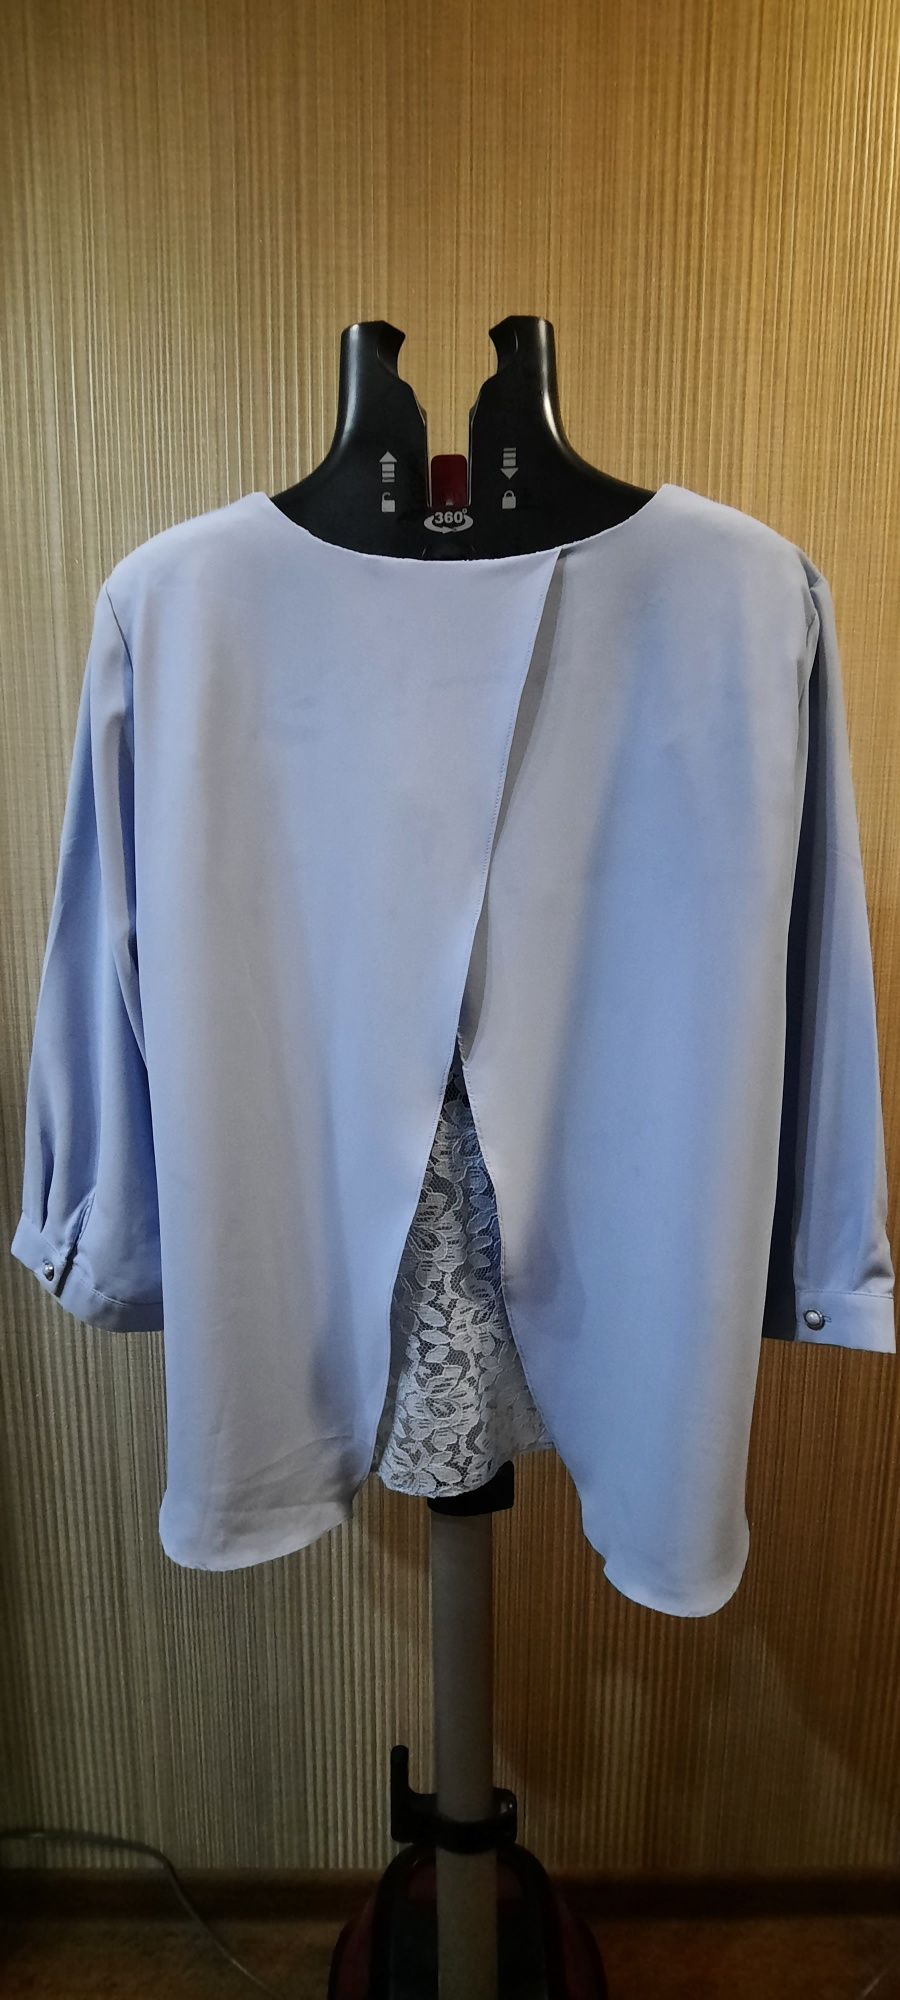 Турецкая шифоновая блузка нежно голубого цвета, 48 турецкий размер